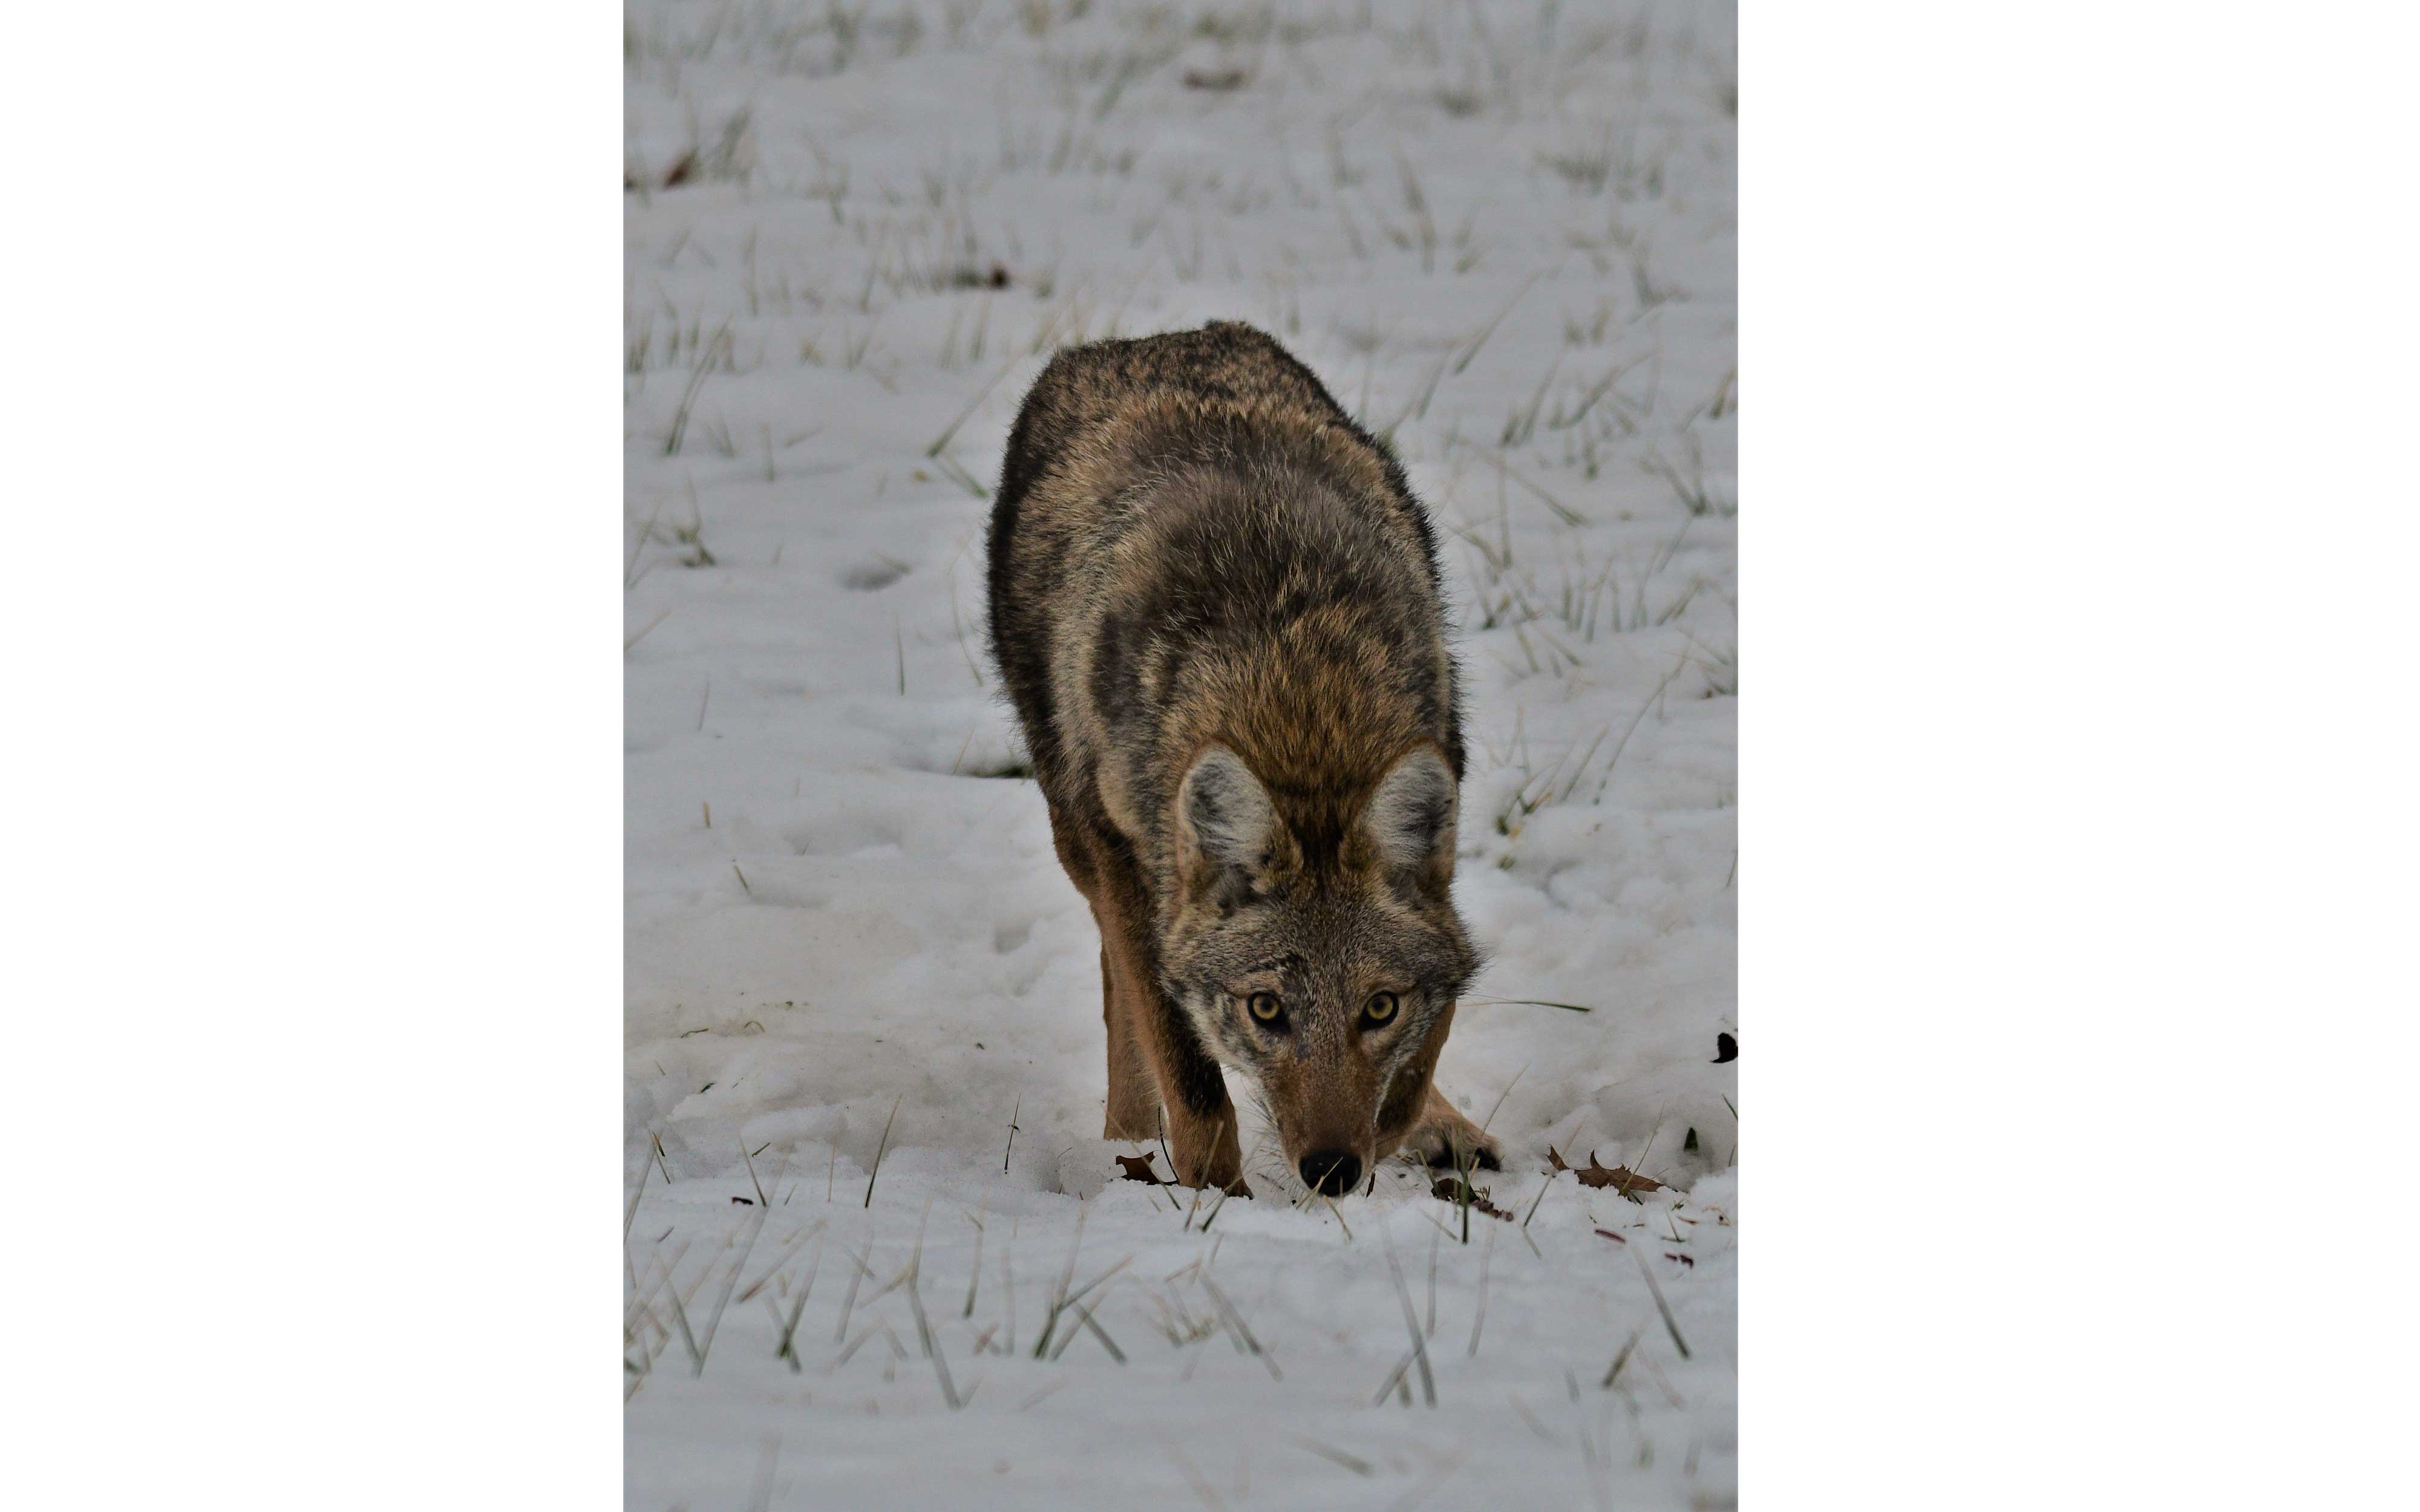 Coyote walking in a snowy field